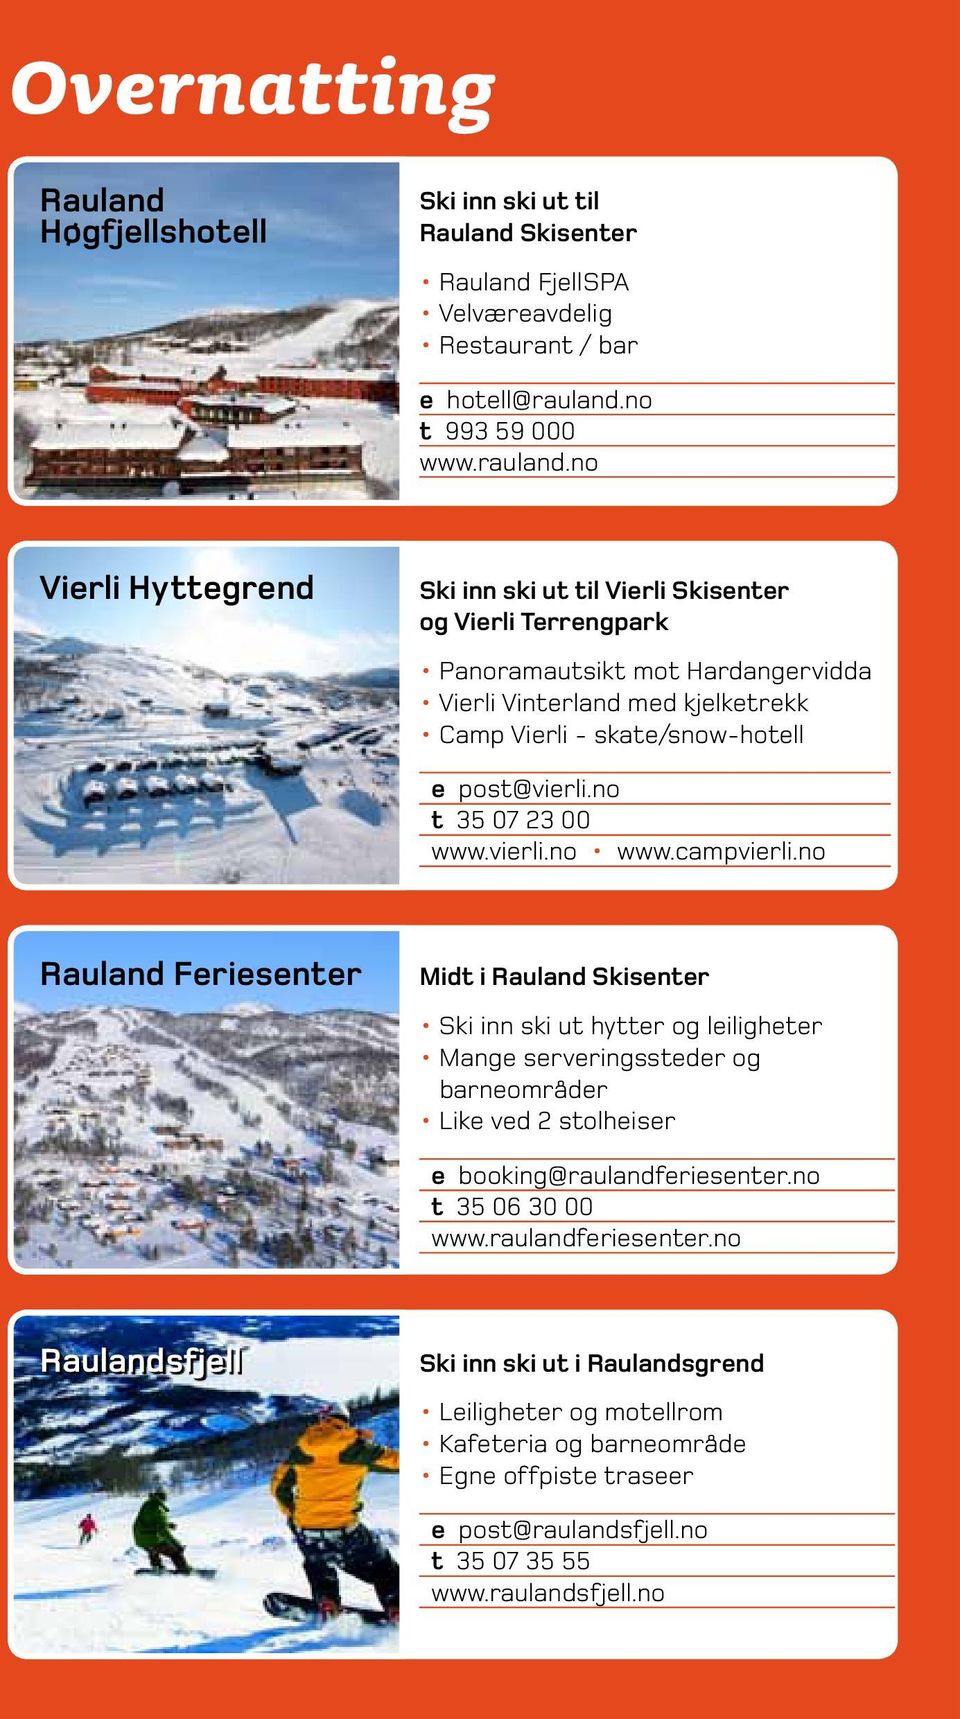 no Vierli Hyttegrend Ski inn ski ut til Vierli Skisenter og Vierli Terrengpark Panoramautsikt mot Hardangervidda Vierli Vinterland med kjelketrekk Camp Vierli - skate/snow-hotell e post@vierli.